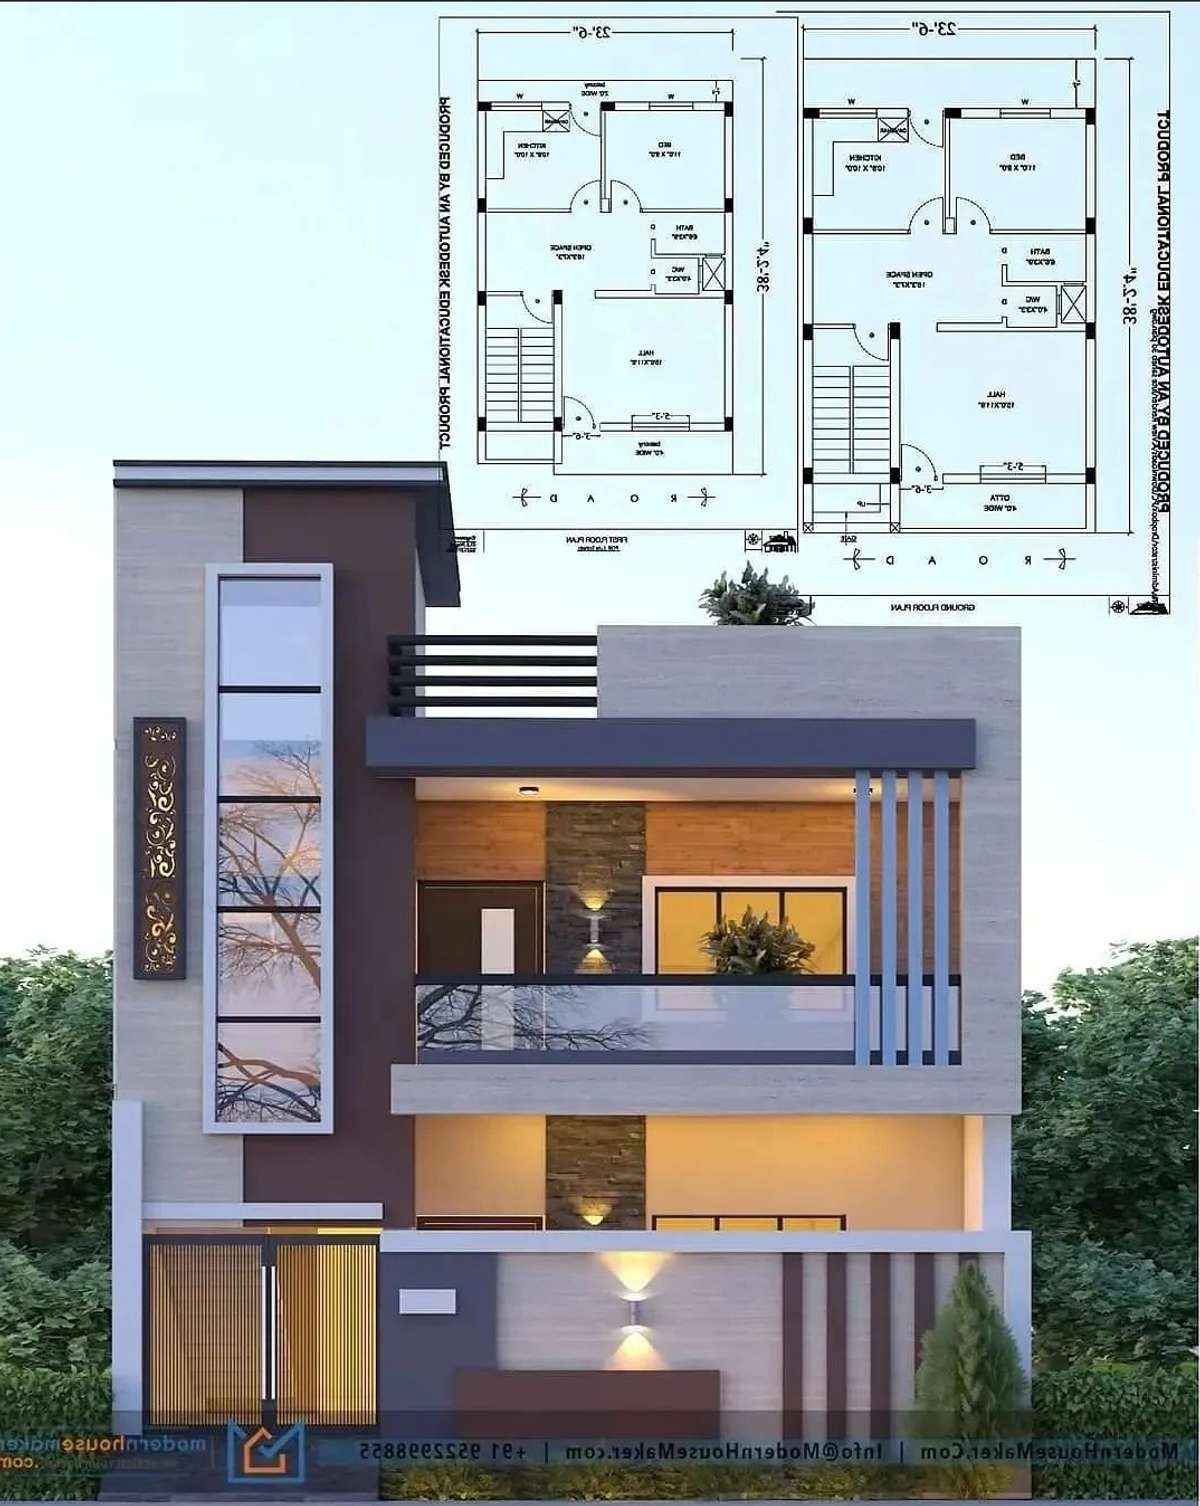 Designs by Civil Engineer Mohd Faizal, Jaipur | Kolo